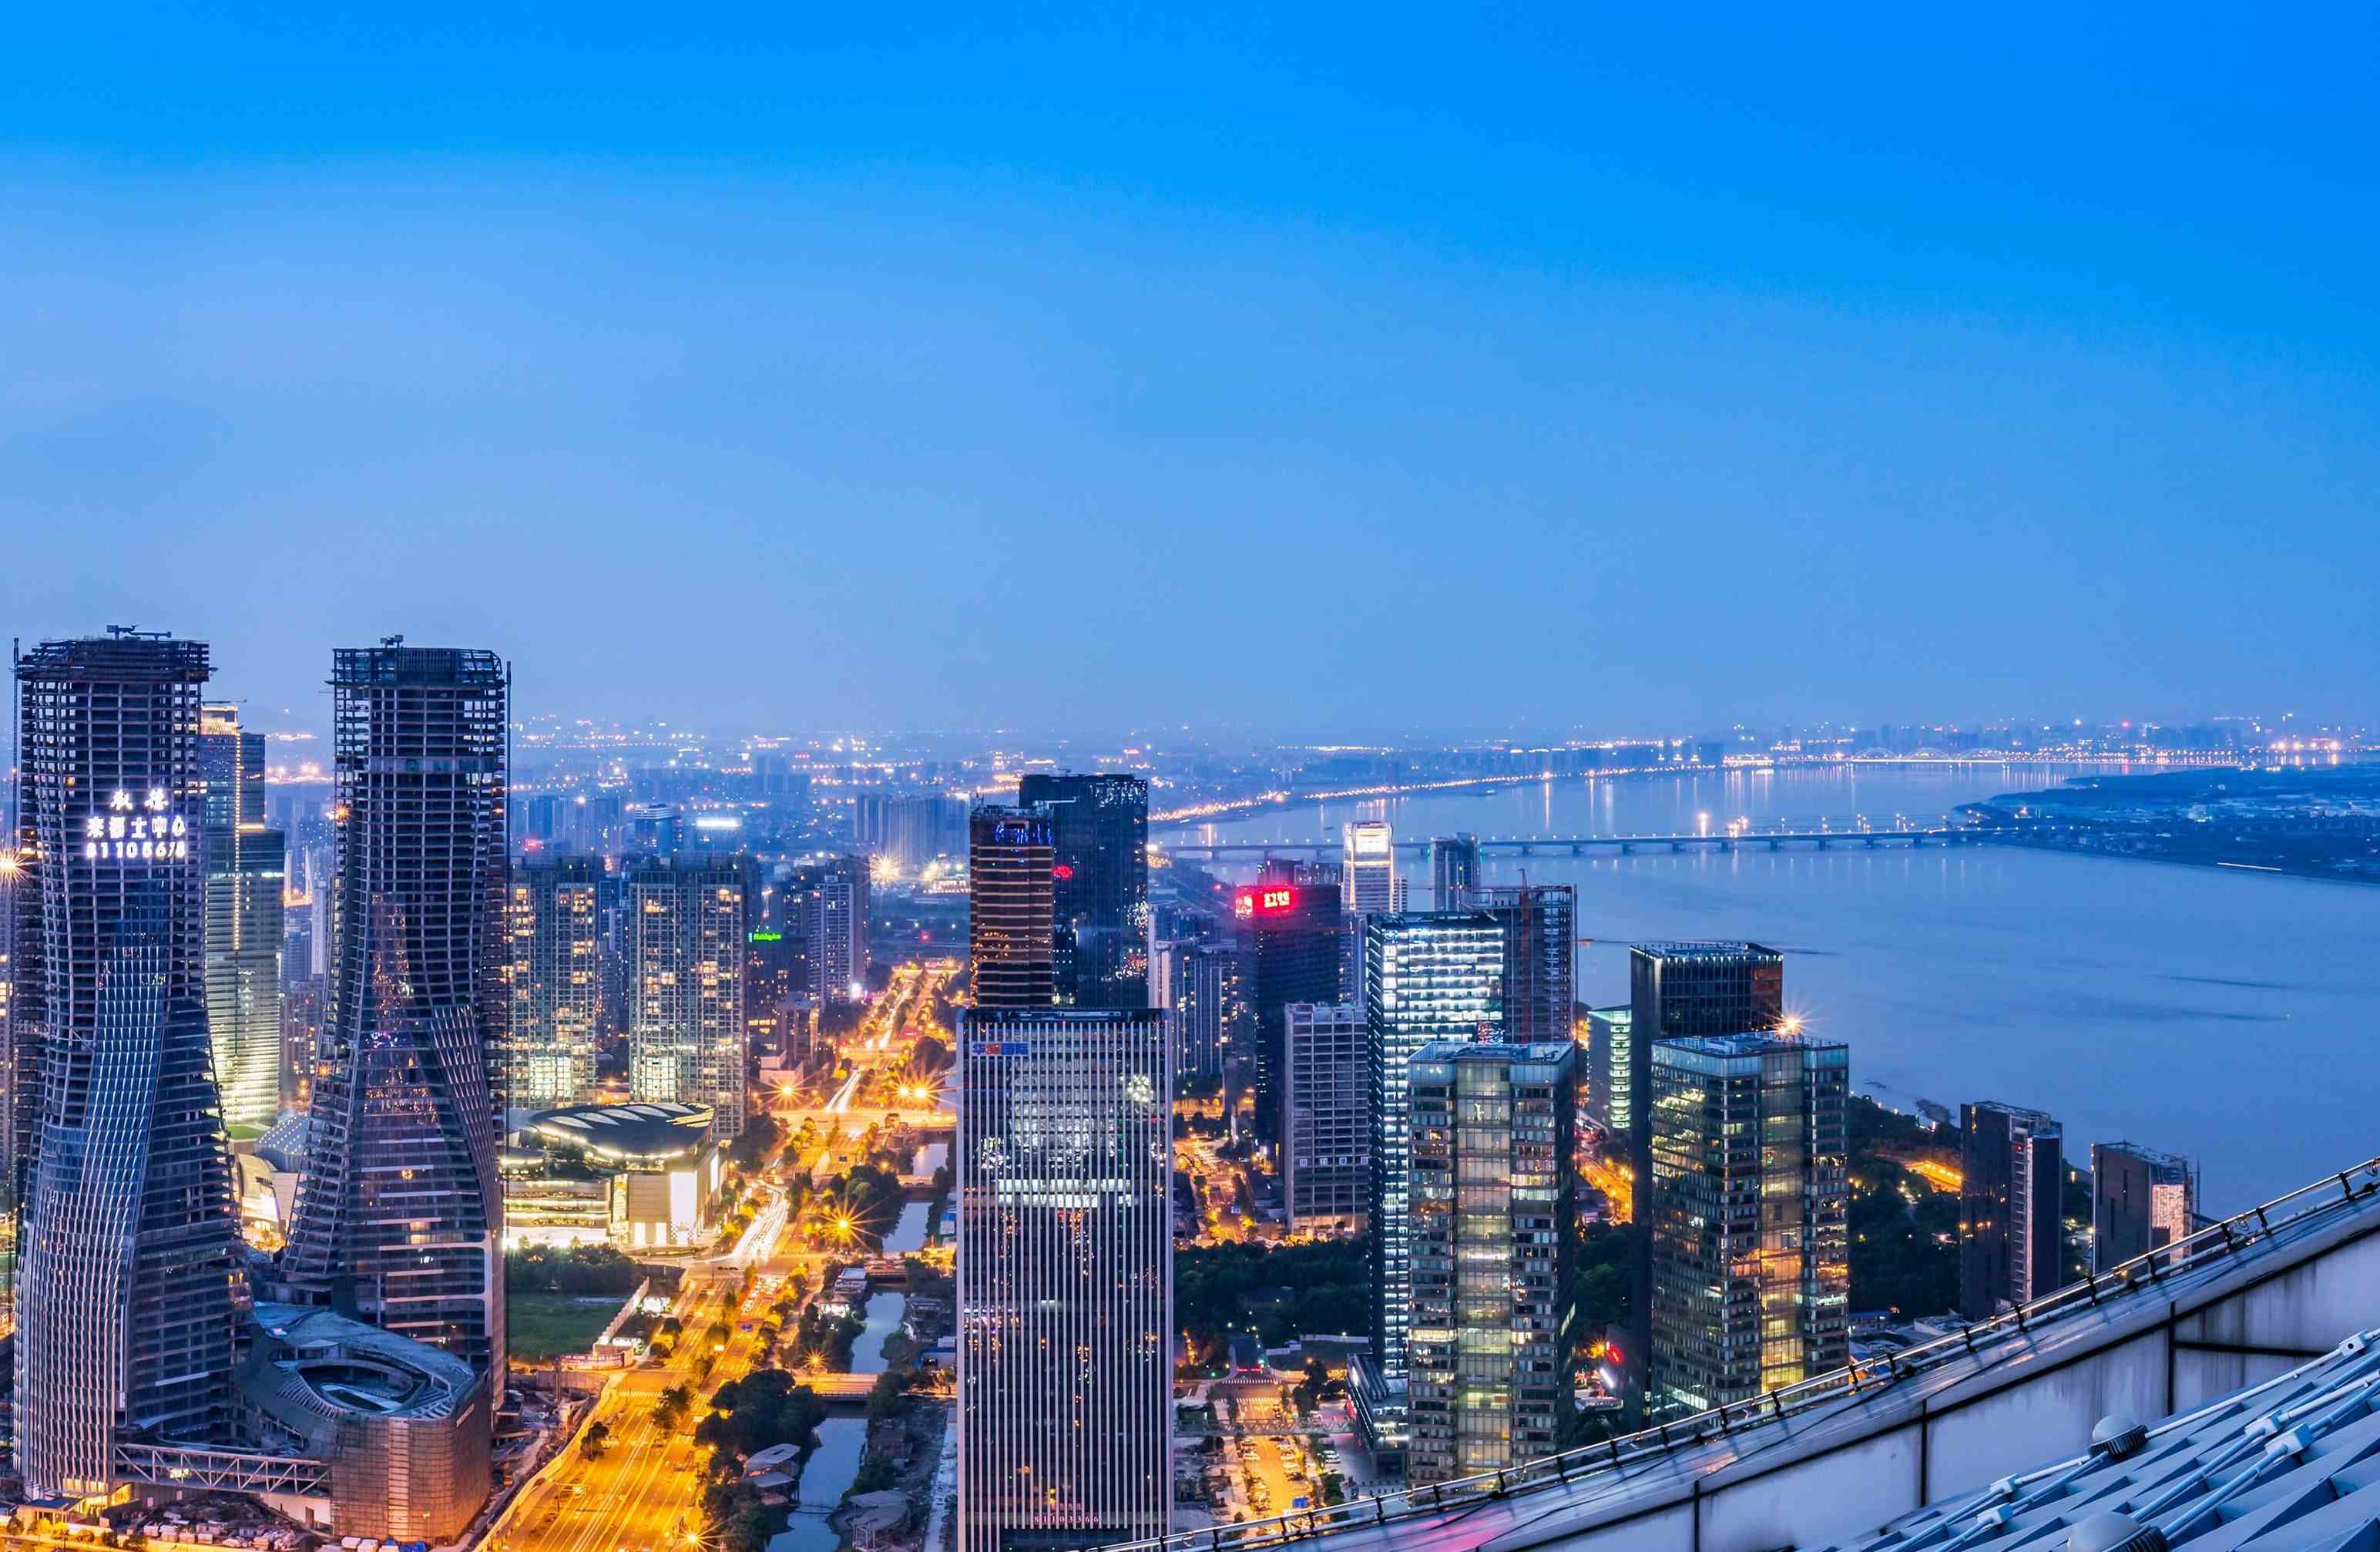 浙江省的省会城市杭州市，什么时候会成为“超大城市”？